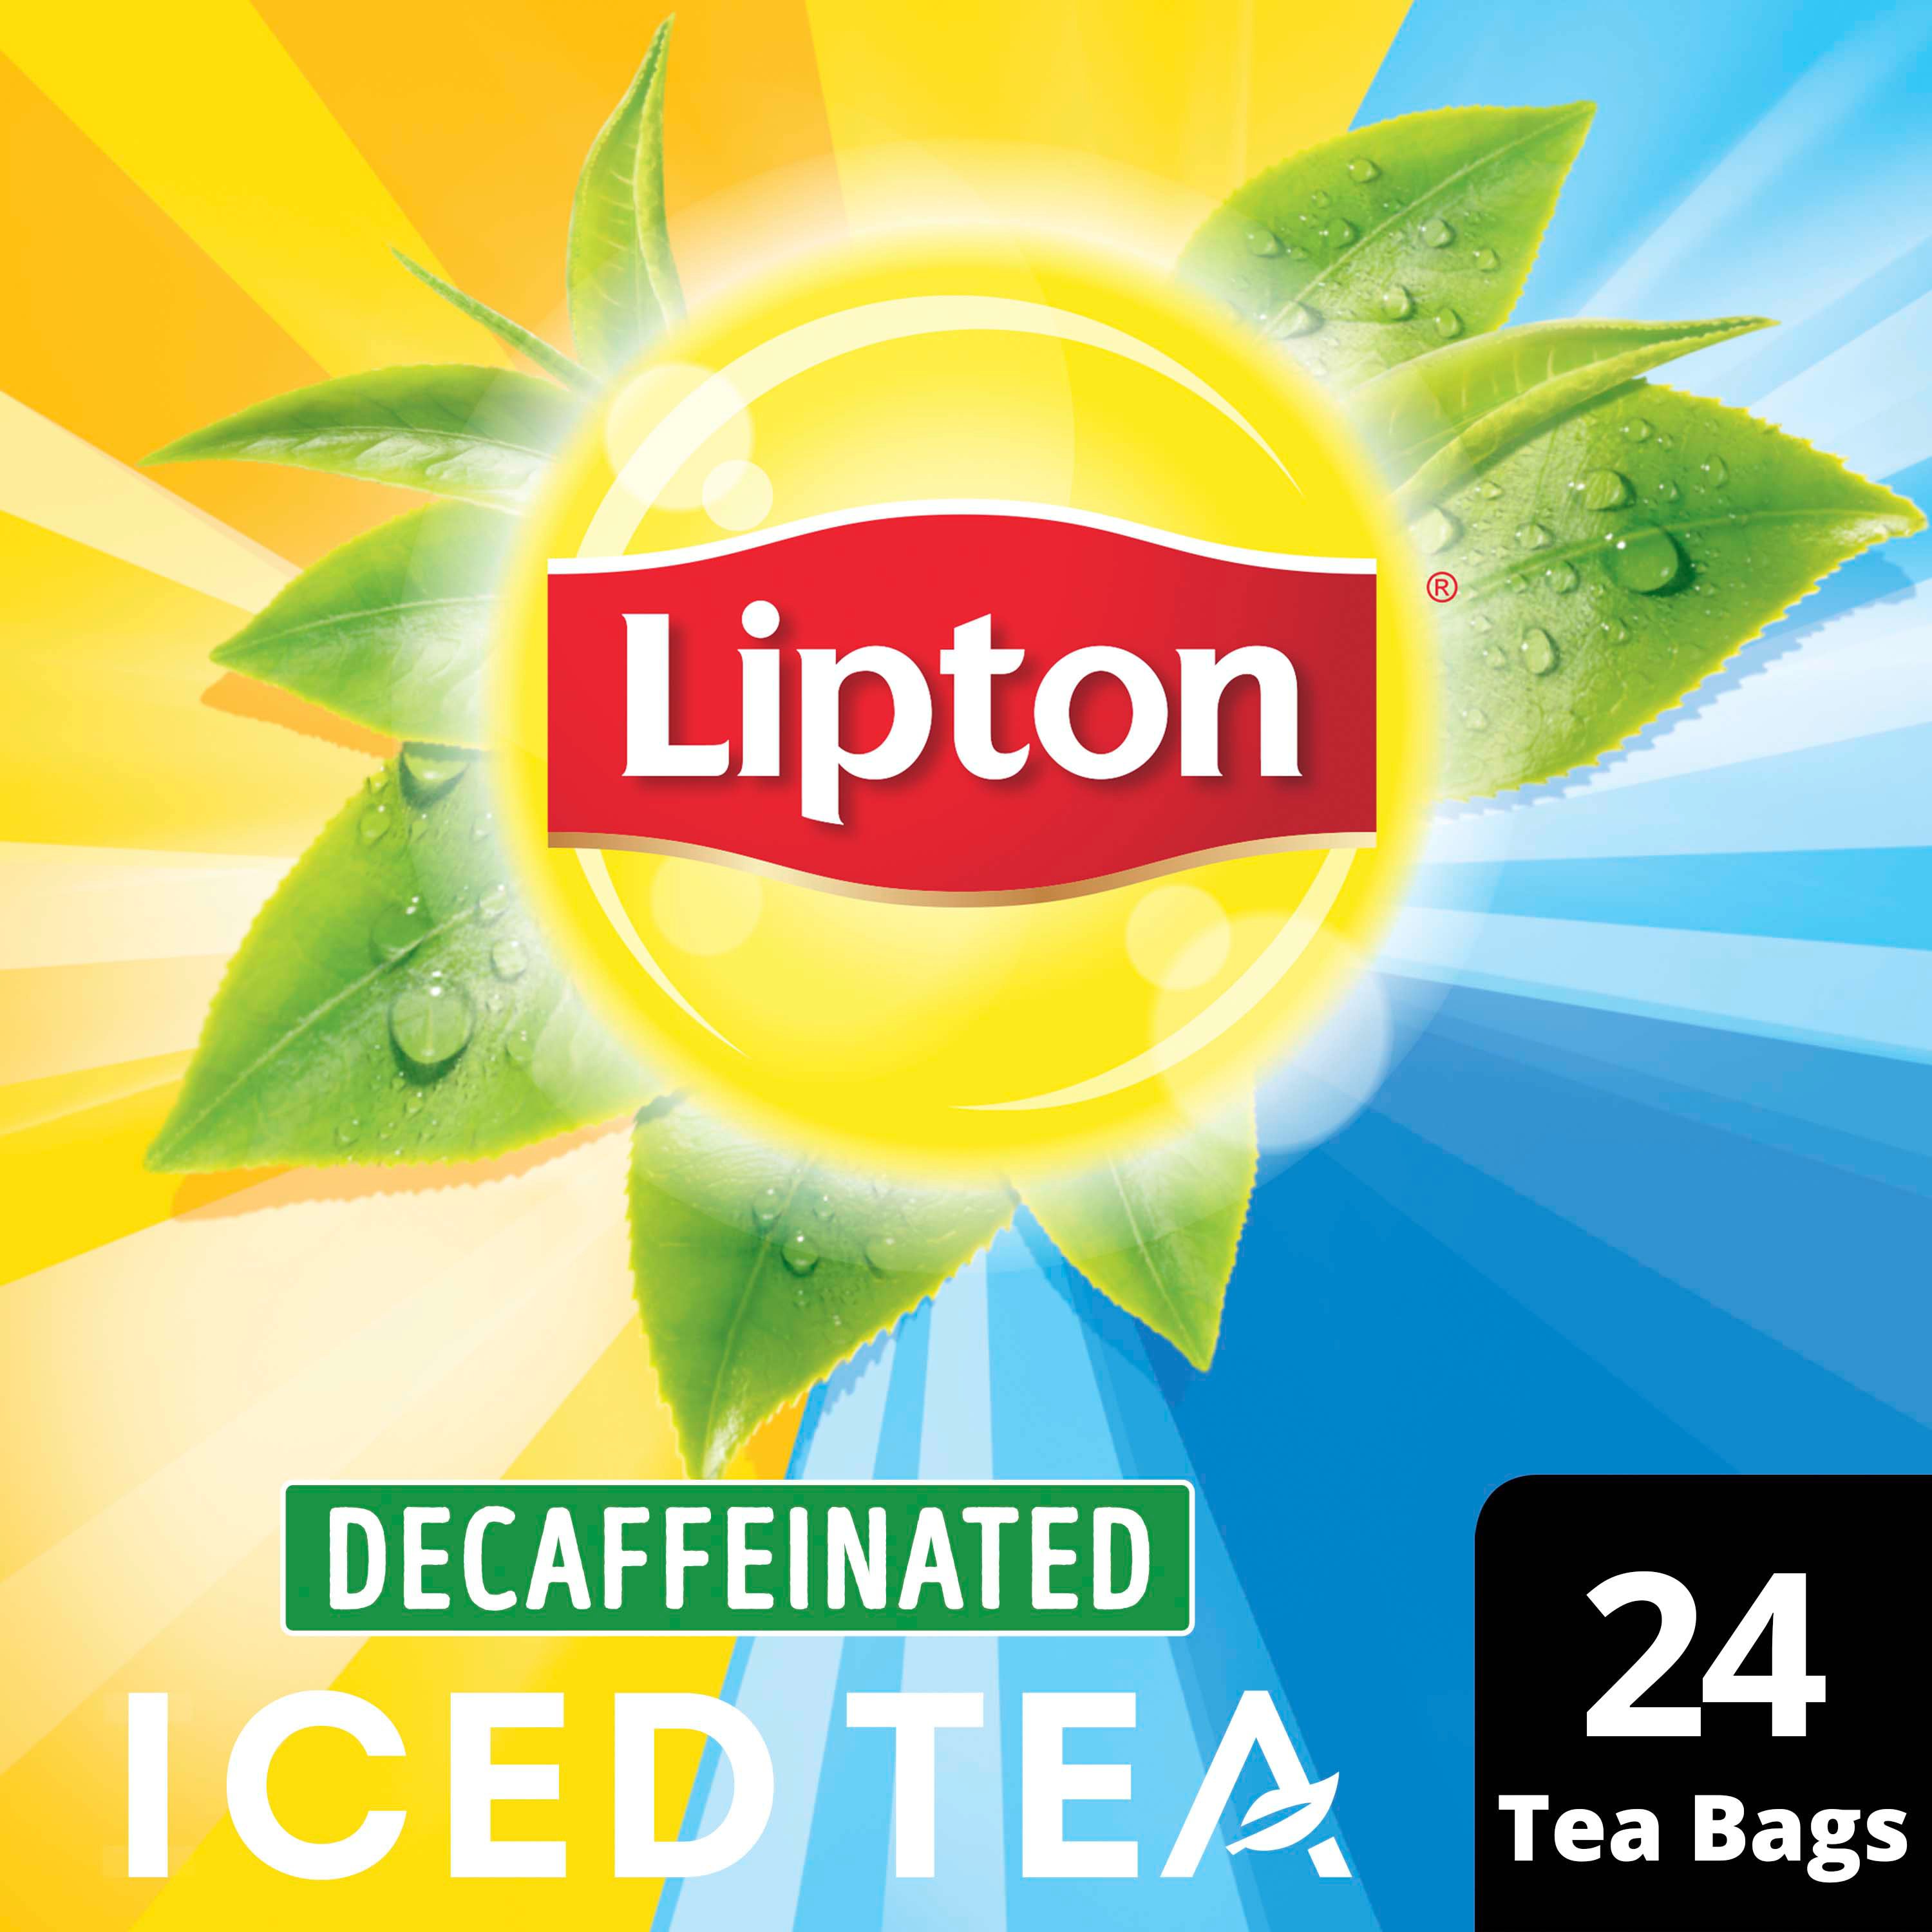 Lipton Black Tea Bags - Shop Tea at H-E-B